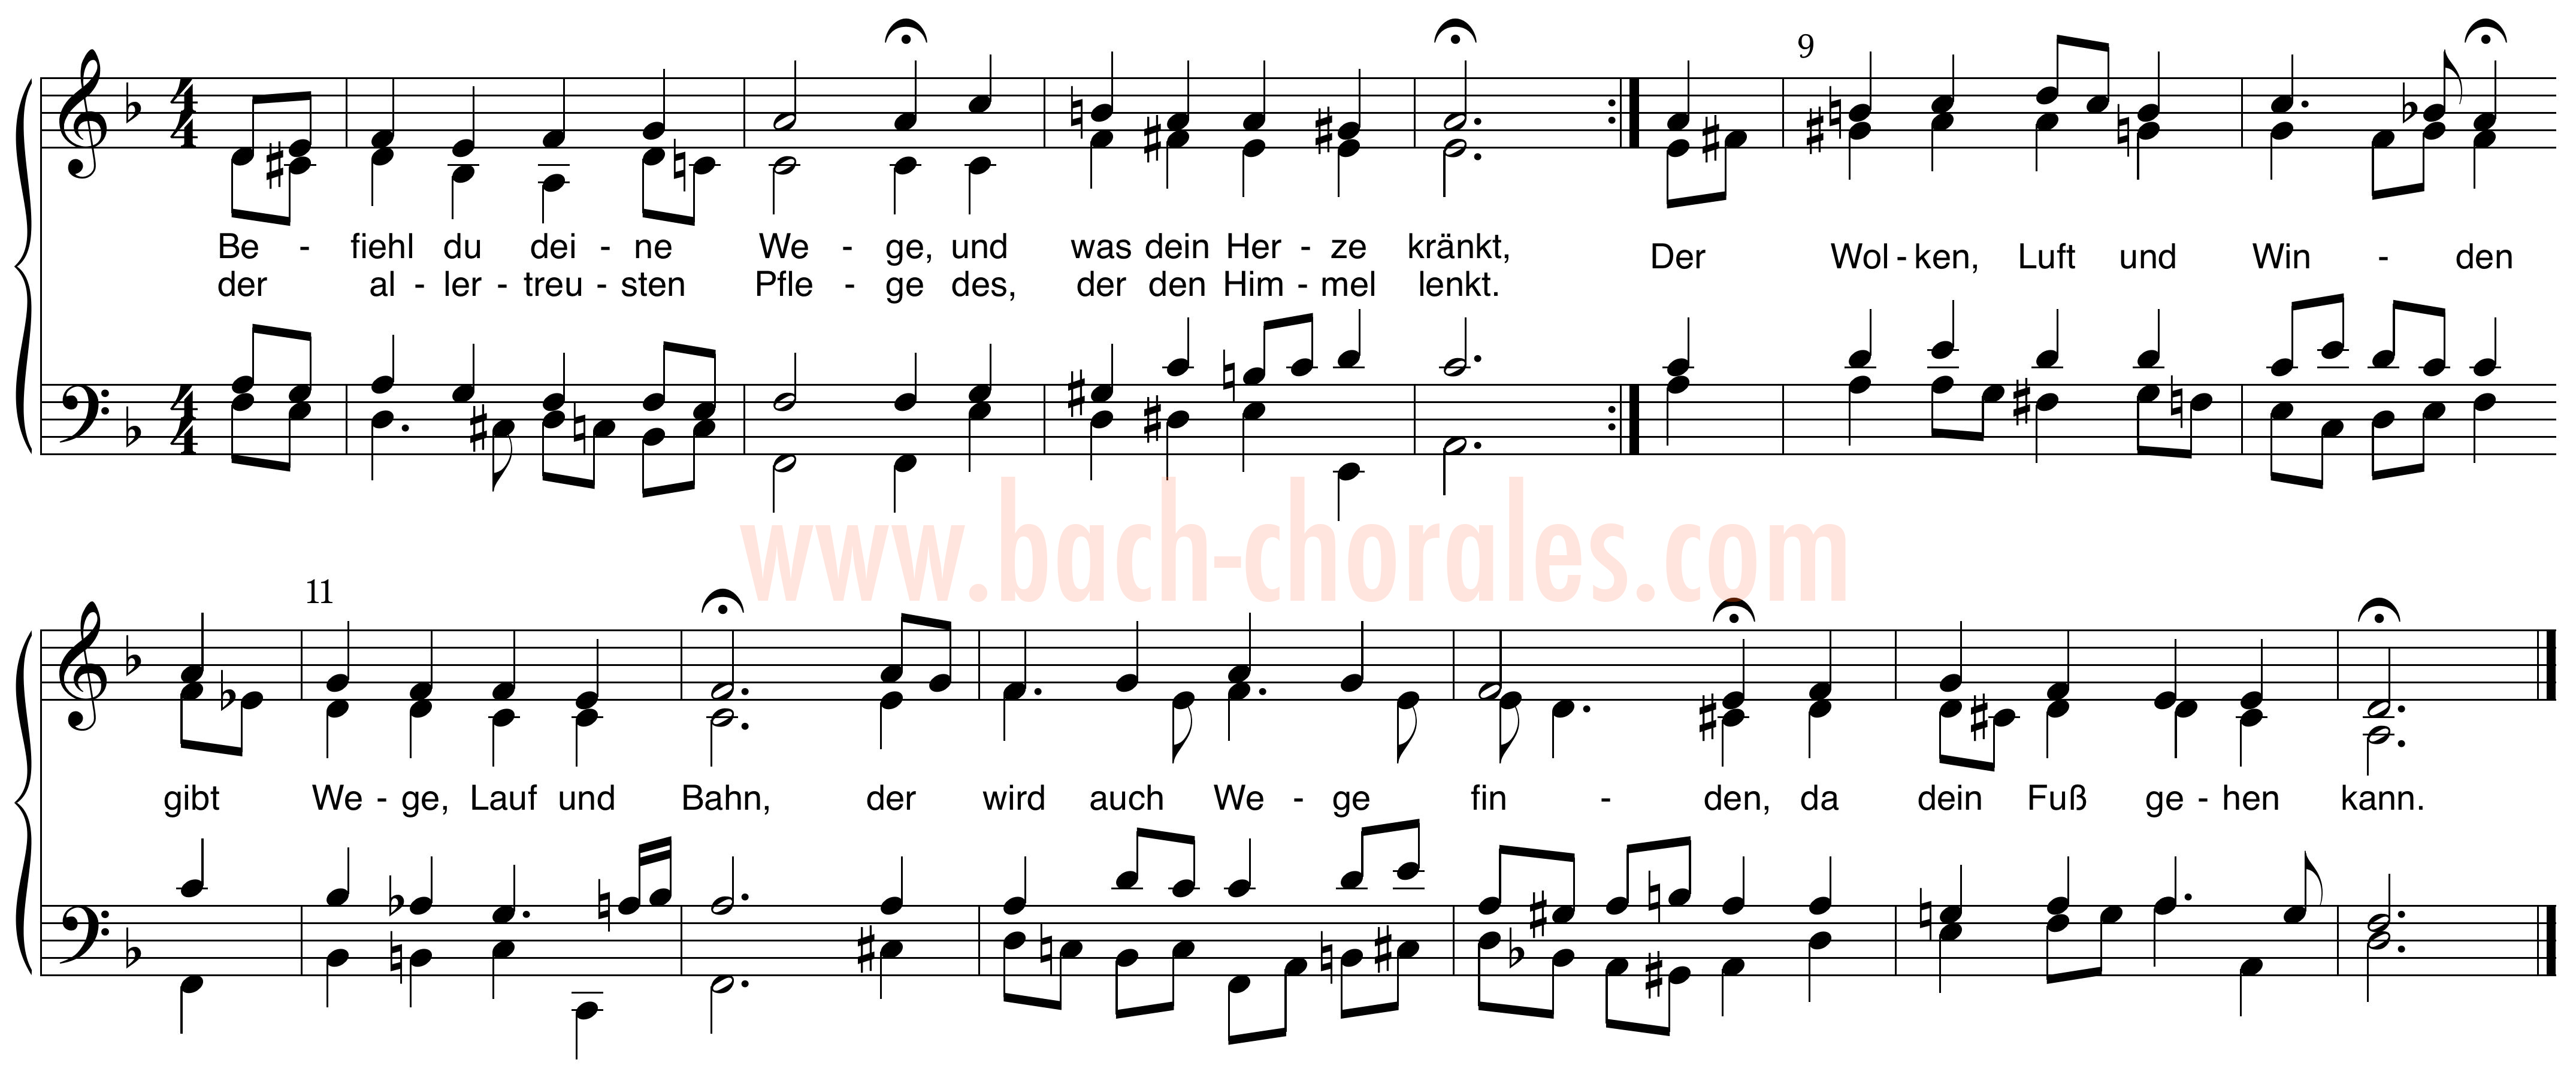 notenbeeld BWV 272 op https://www.bach-chorales.com/